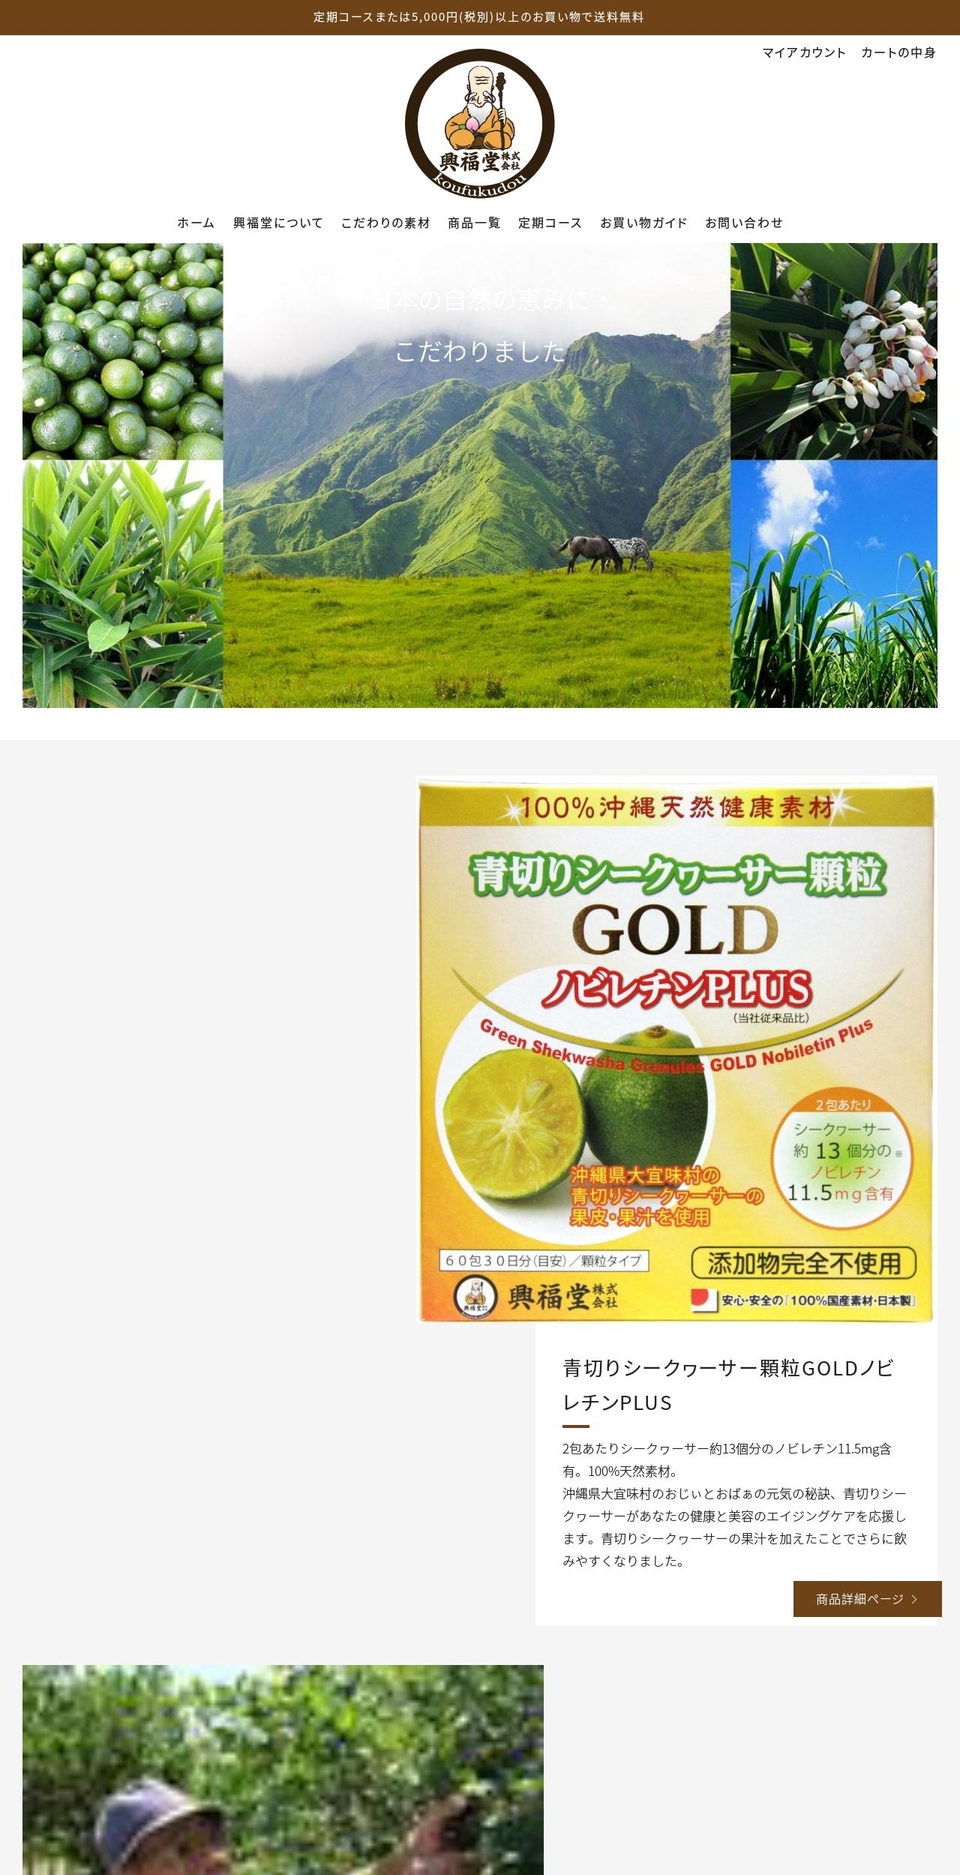 kfd.jp shopify website screenshot